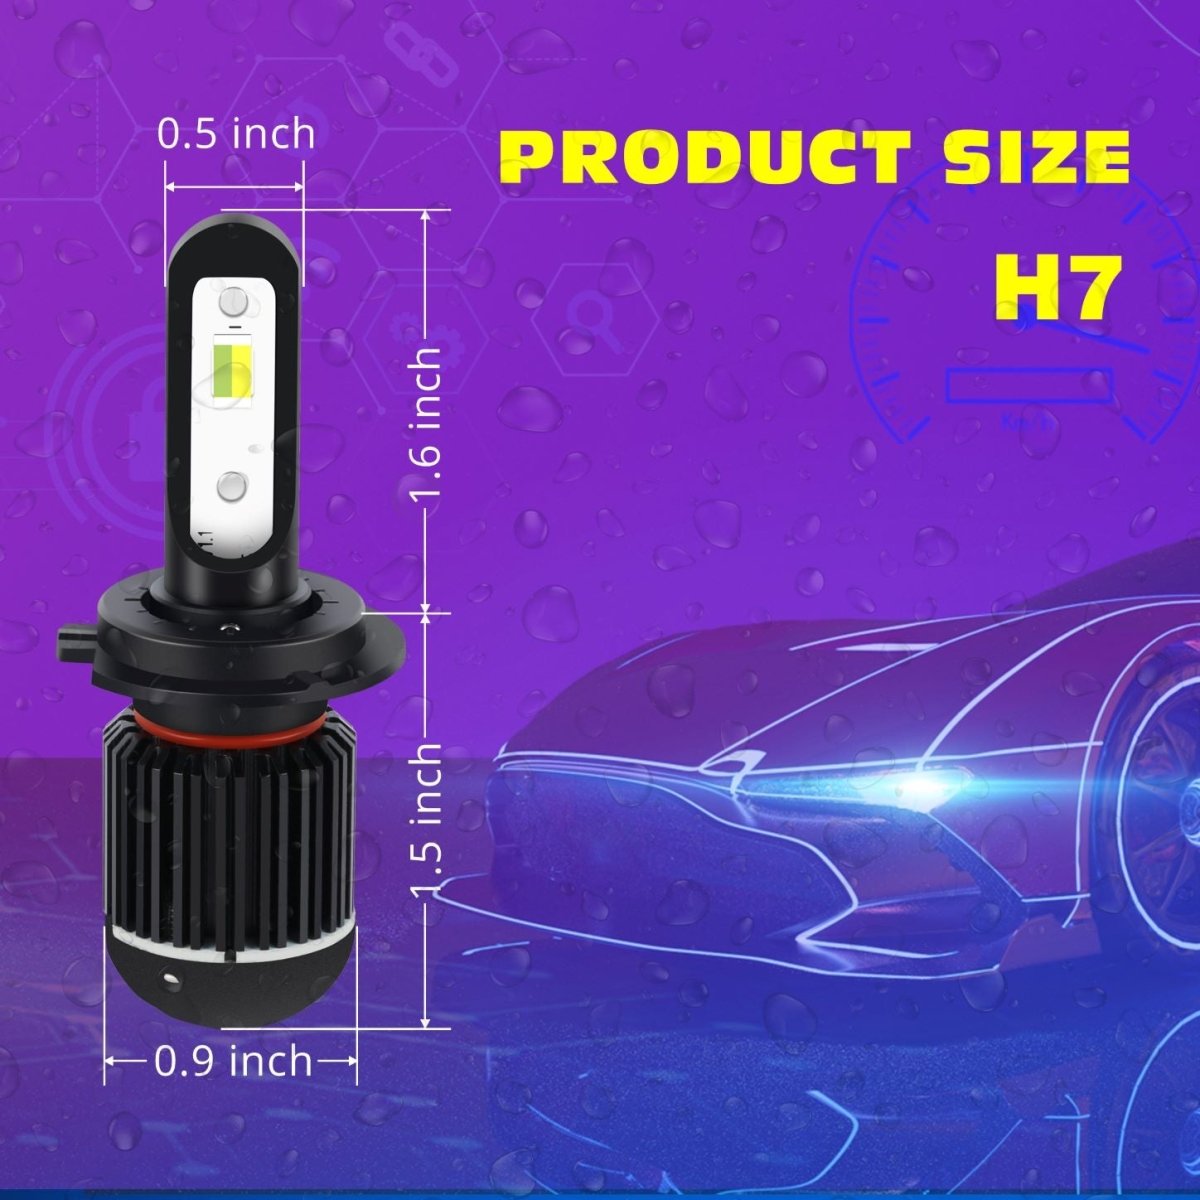 H7 LED Switchback Fog Lights, DRL Bulbs | 6K White/3KYellow -Alla Lighting